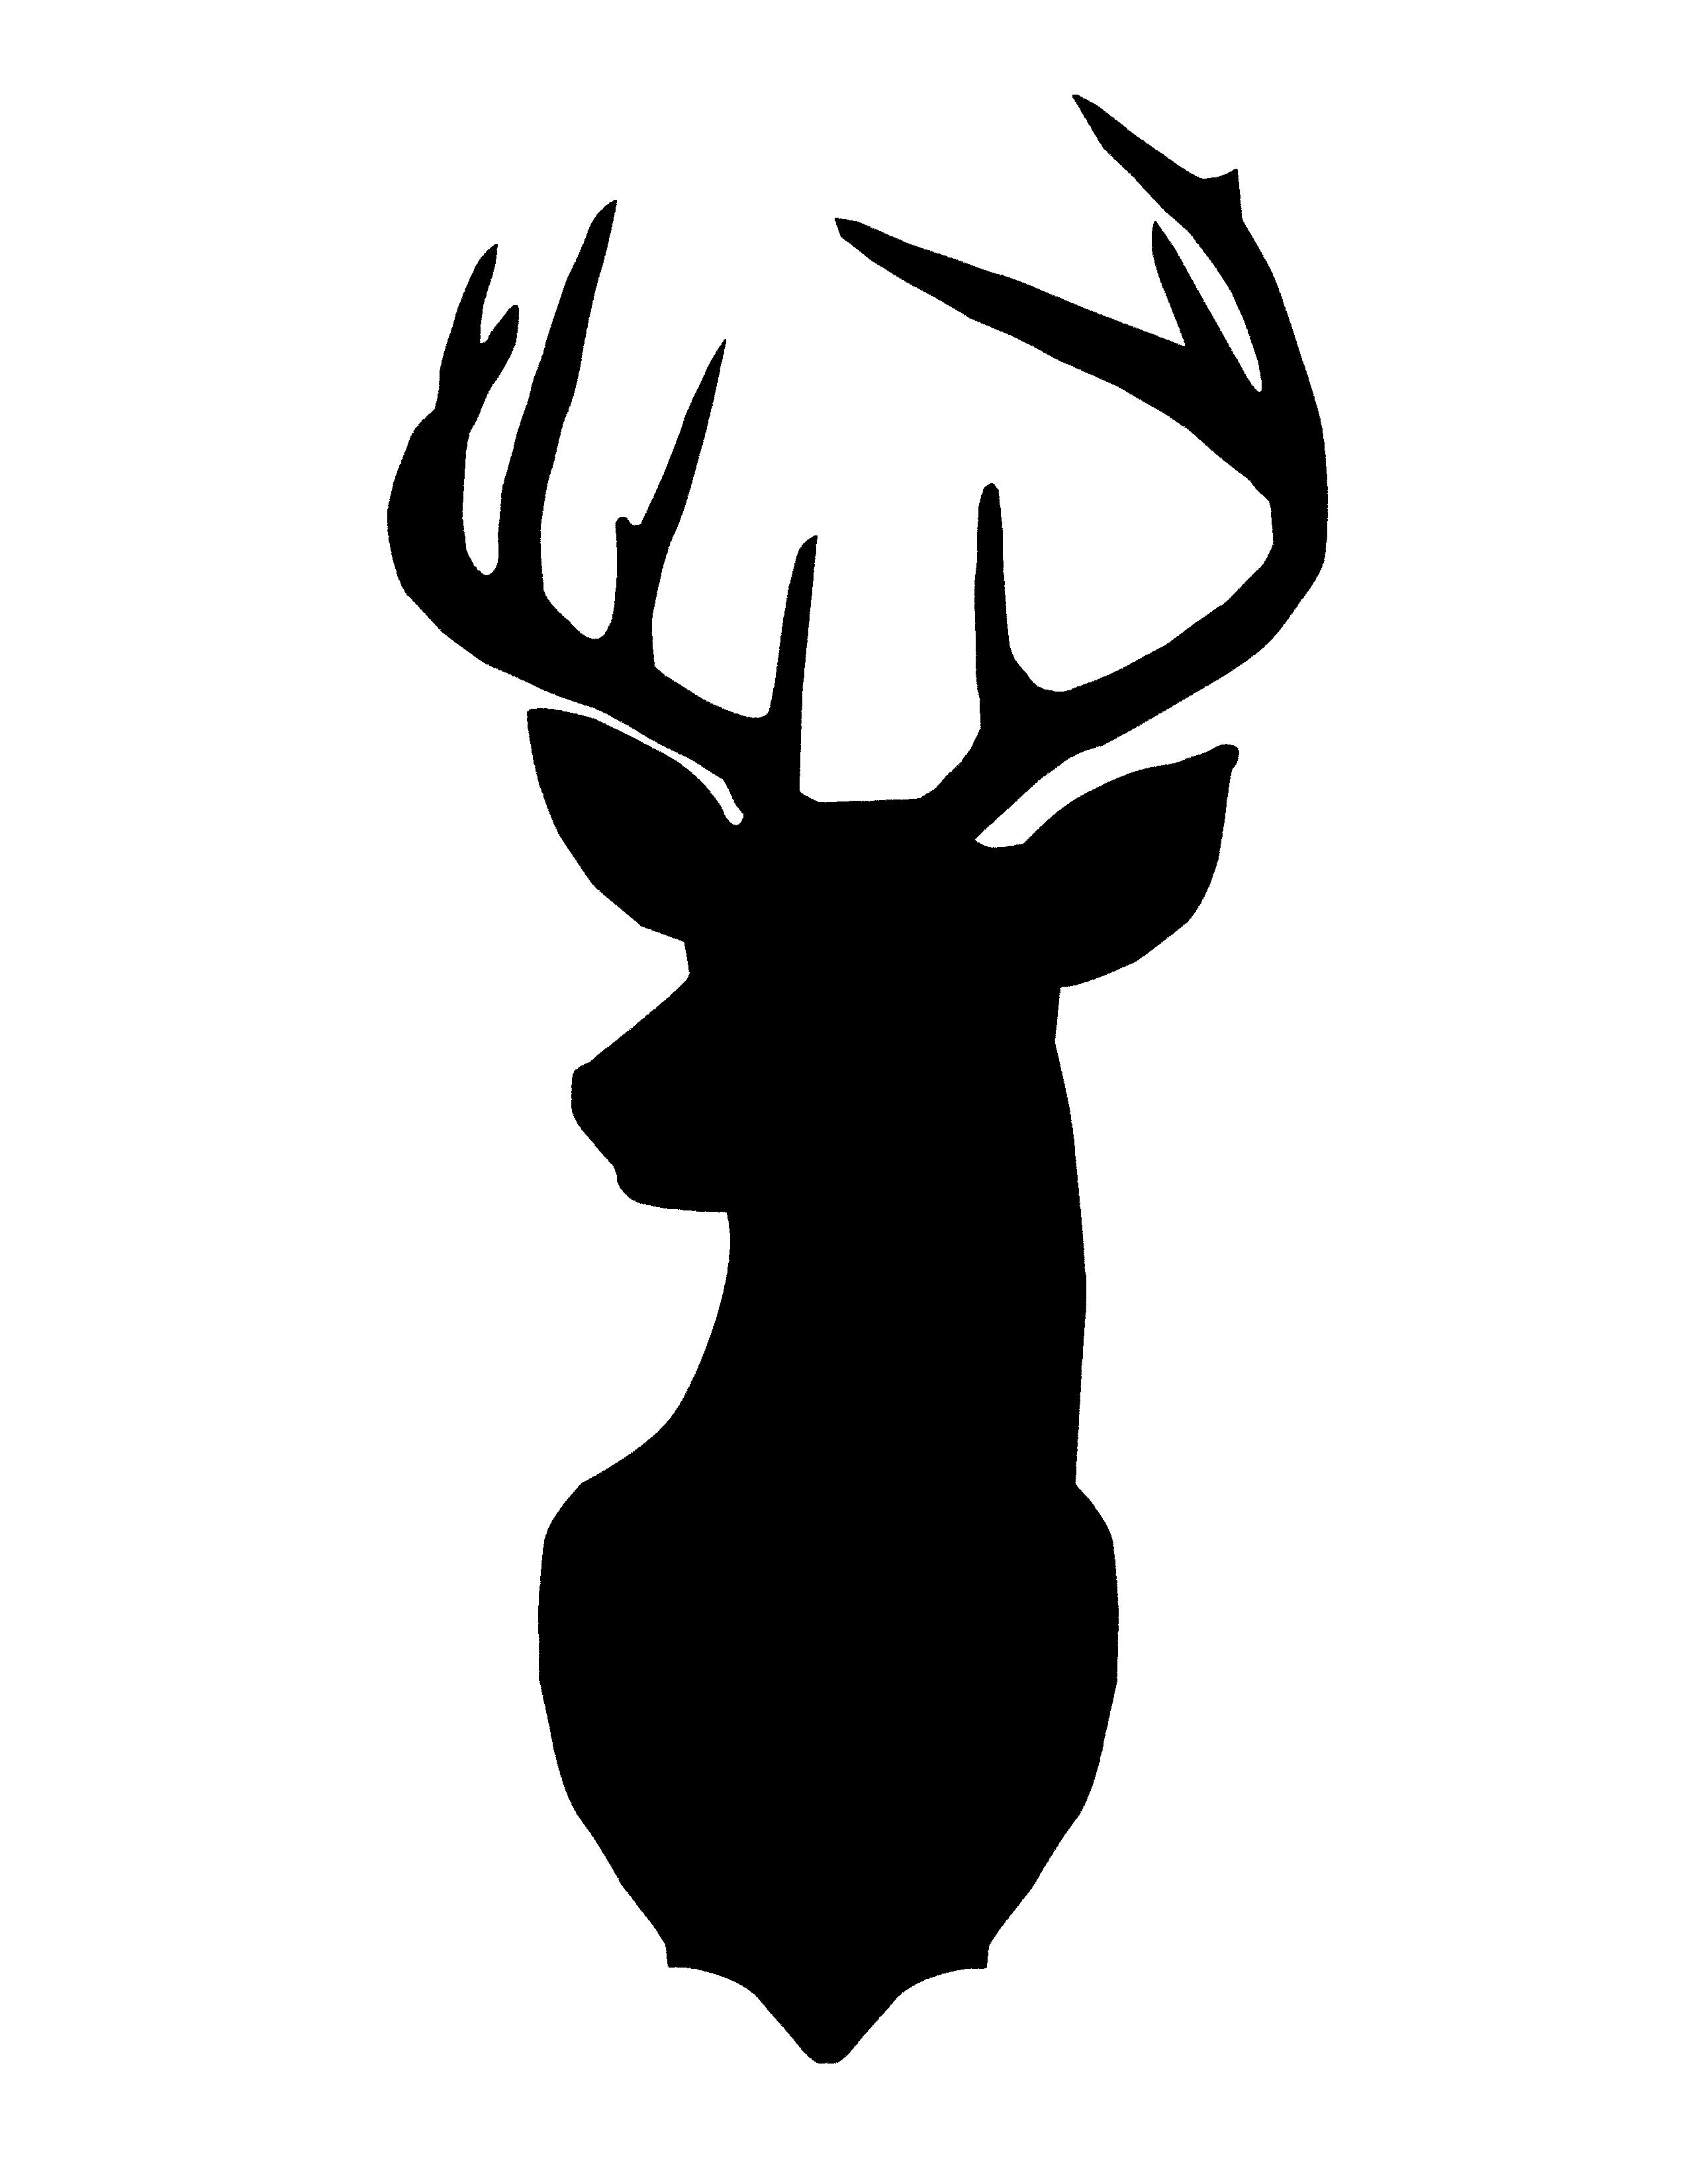 Images Of Deer Head Silhouette at GetDrawings Free download